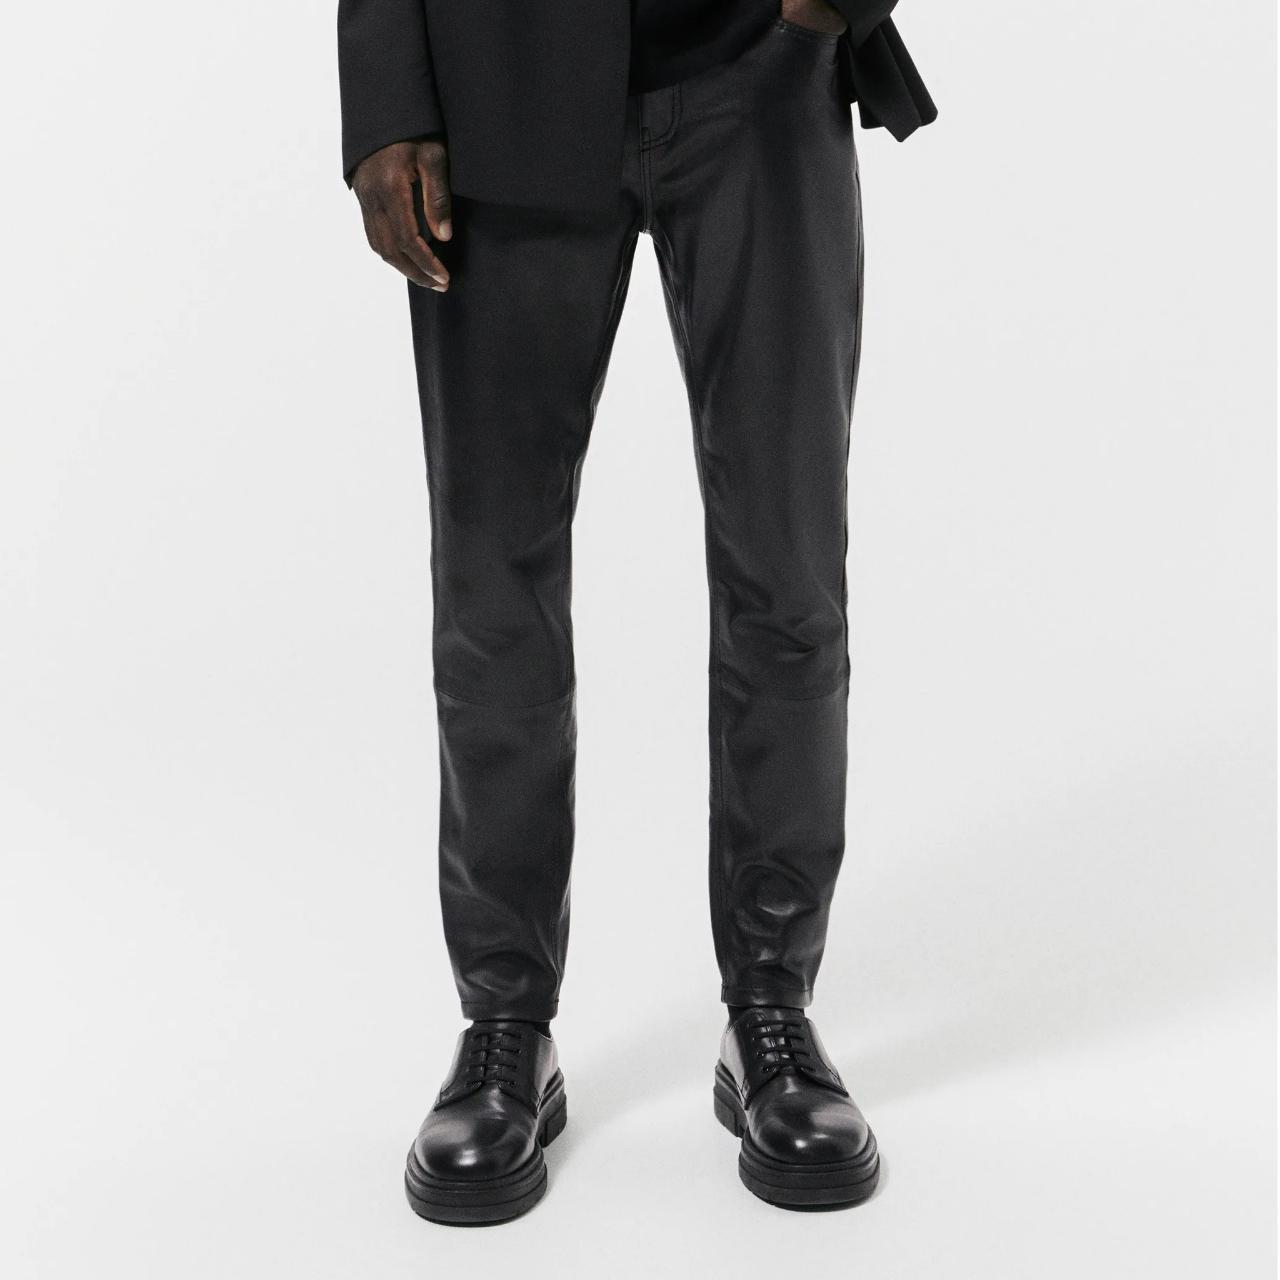 Men's ZARA 100% Genuine Leather Black Skinny Fit... - Depop